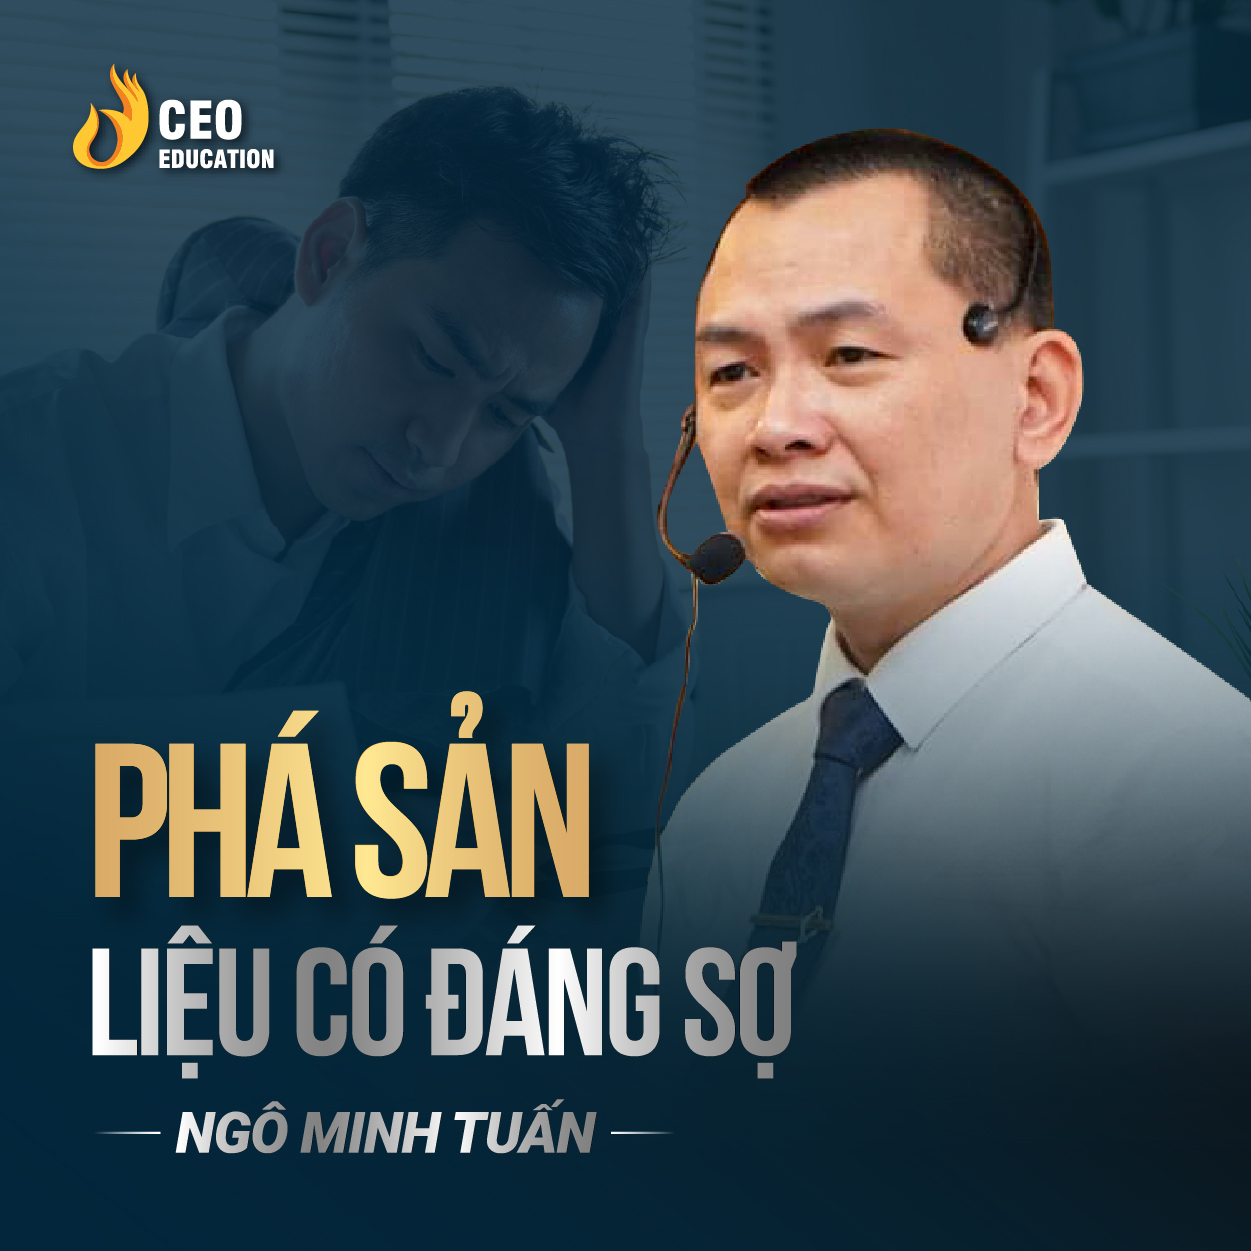 Sau phá sản liệu ta nhận được những gì | Ngô Minh Tuấn | Học Viện CEO Việt Nam